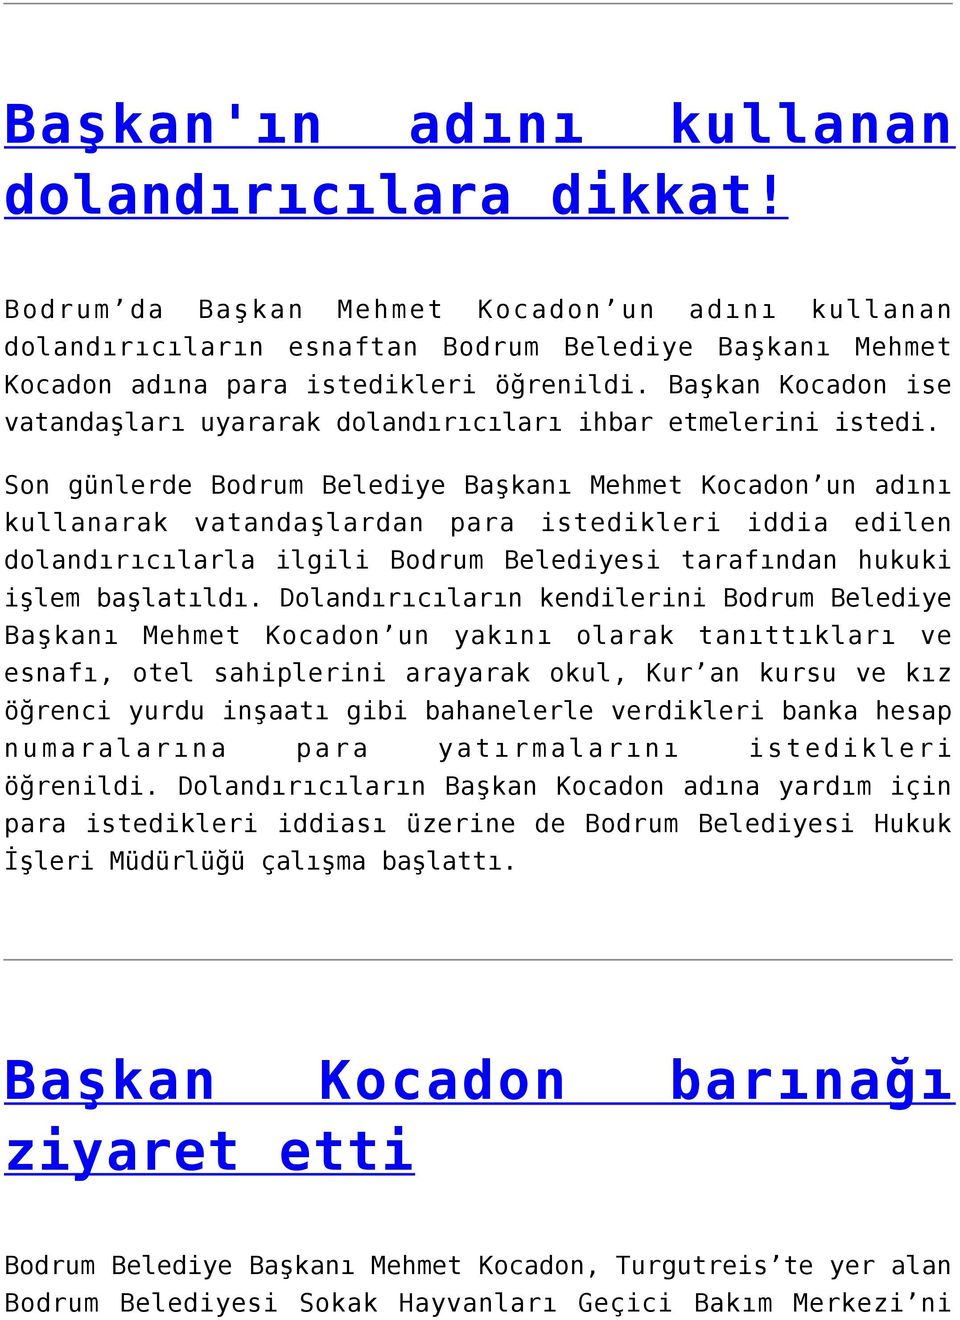 Son günlerde Bodrum Belediye Başkanı Mehmet Kocadon un adını kullanarak vatandaşlardan para istedikleri iddia edilen dolandırıcılarla ilgili Bodrum Belediyesi tarafından hukuki işlem başlatıldı.